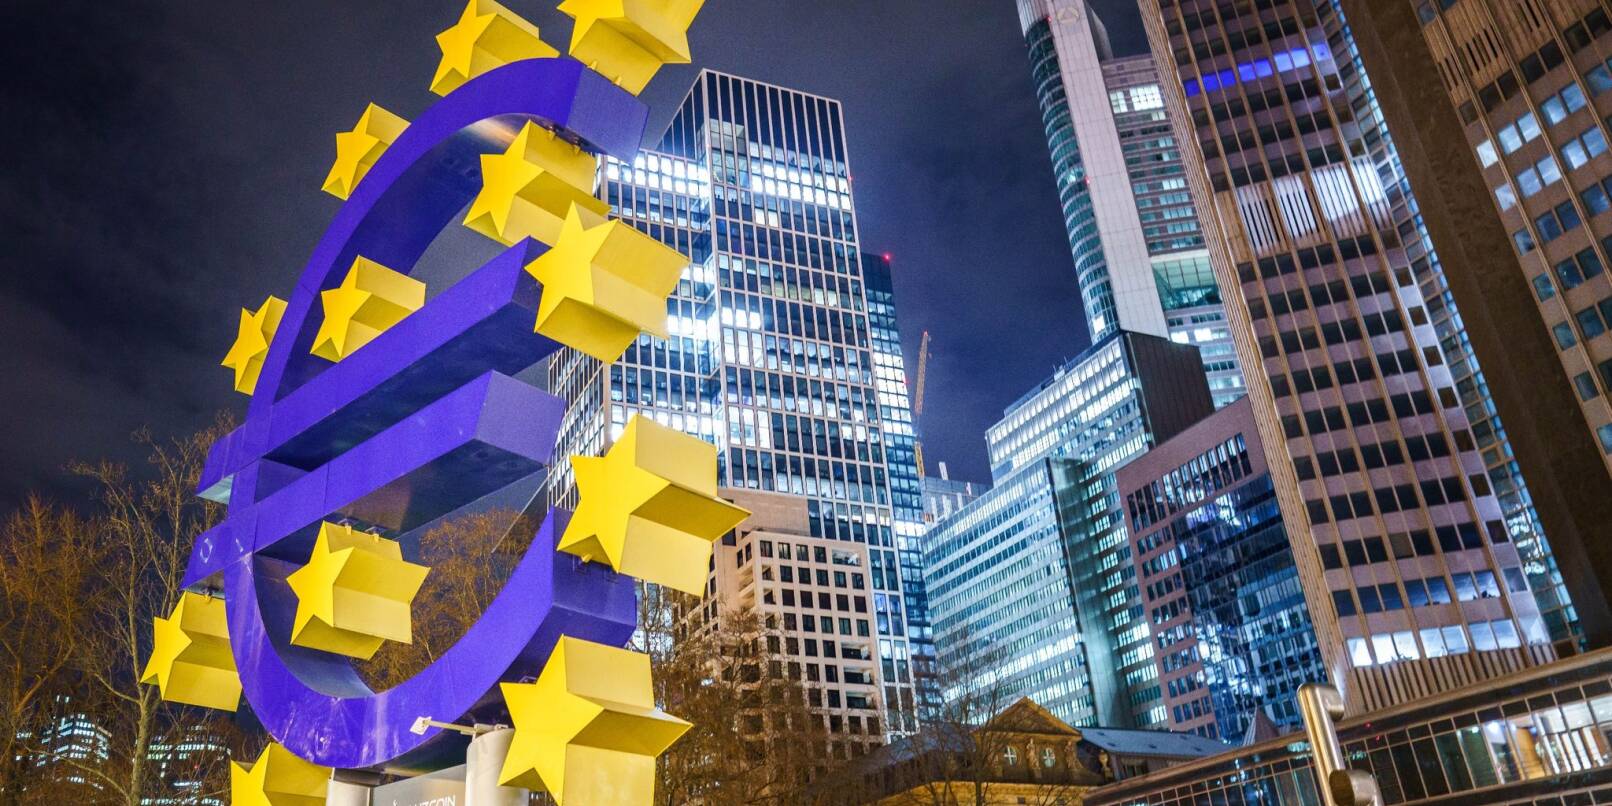 Die große Skulptur des Euro-Symbols steht vor den Hochhäusern des Frankfurter Bankenviertels.